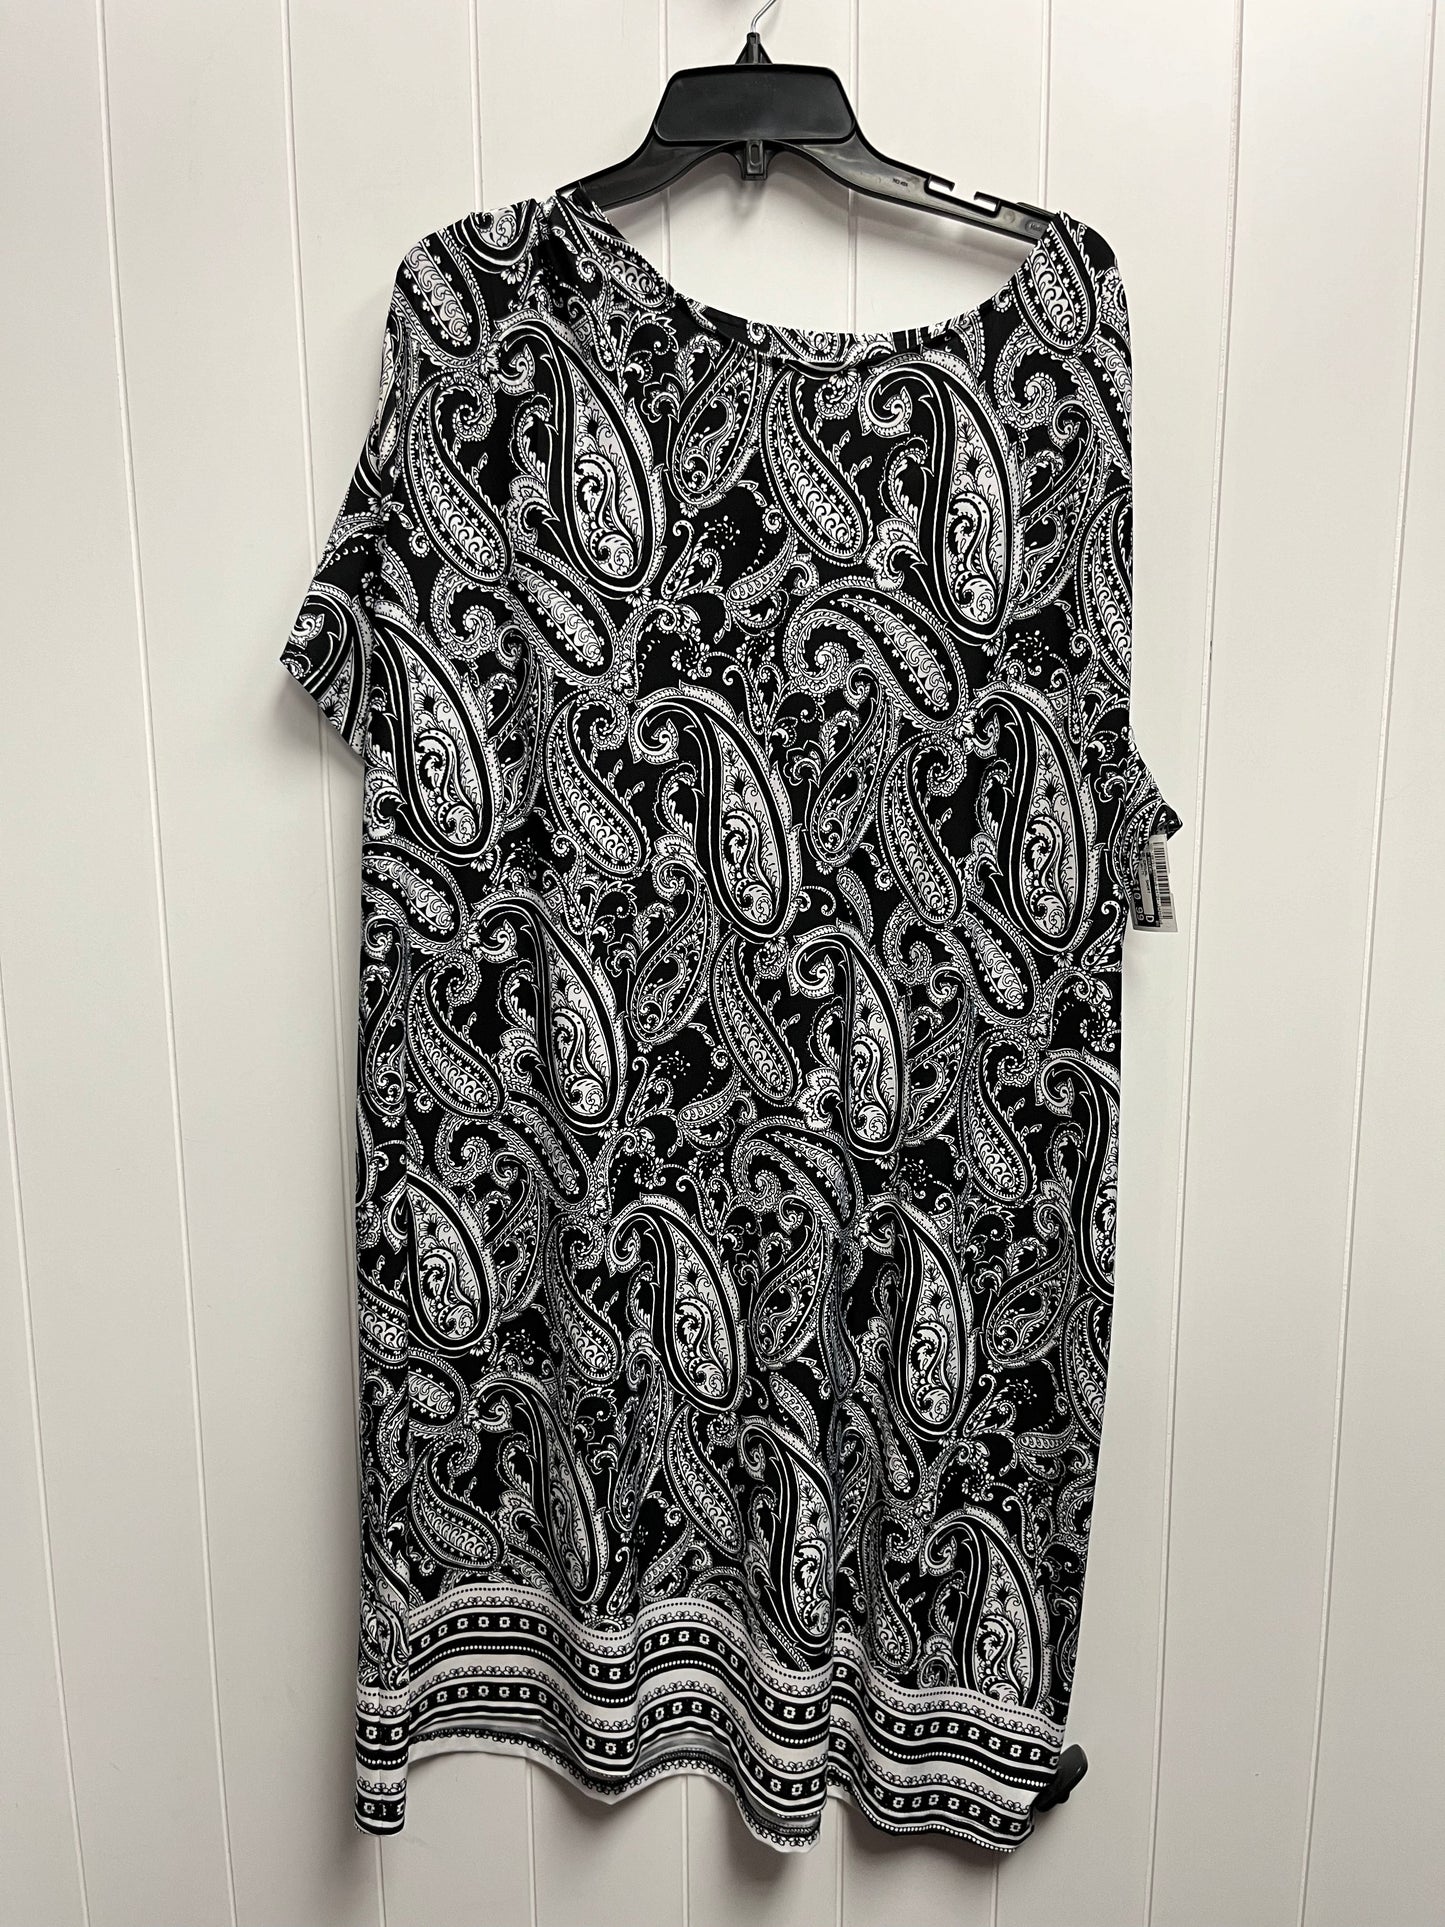 Black & White Dress Casual Short Kim Rogers, Size 1x